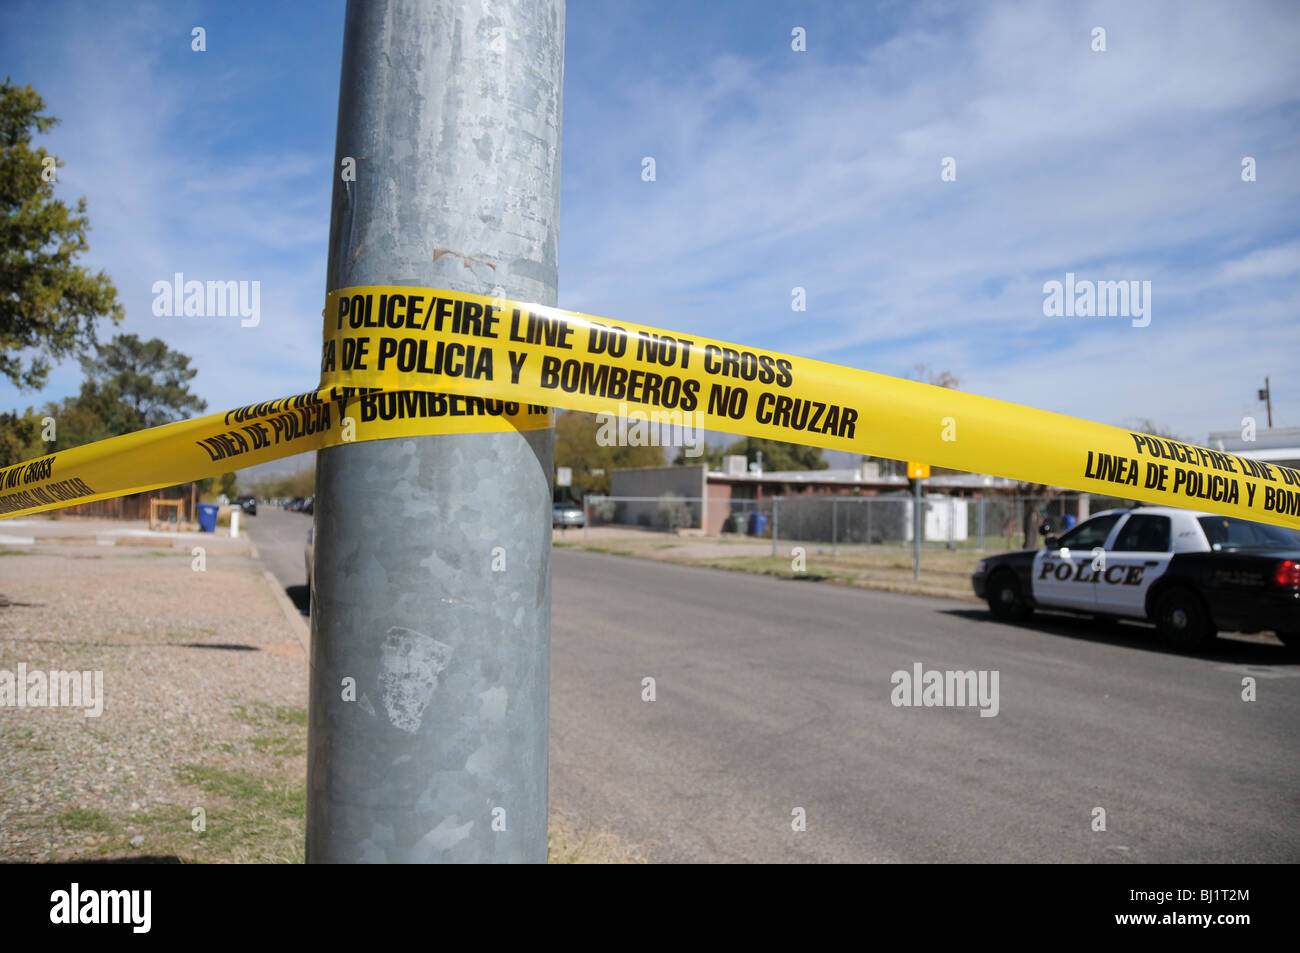 La police enquête sur un homicide de Tucson et le tir d'un autre homme que l'on croit être des gangs dans la région de Tucson, Arizona, USA. Banque D'Images